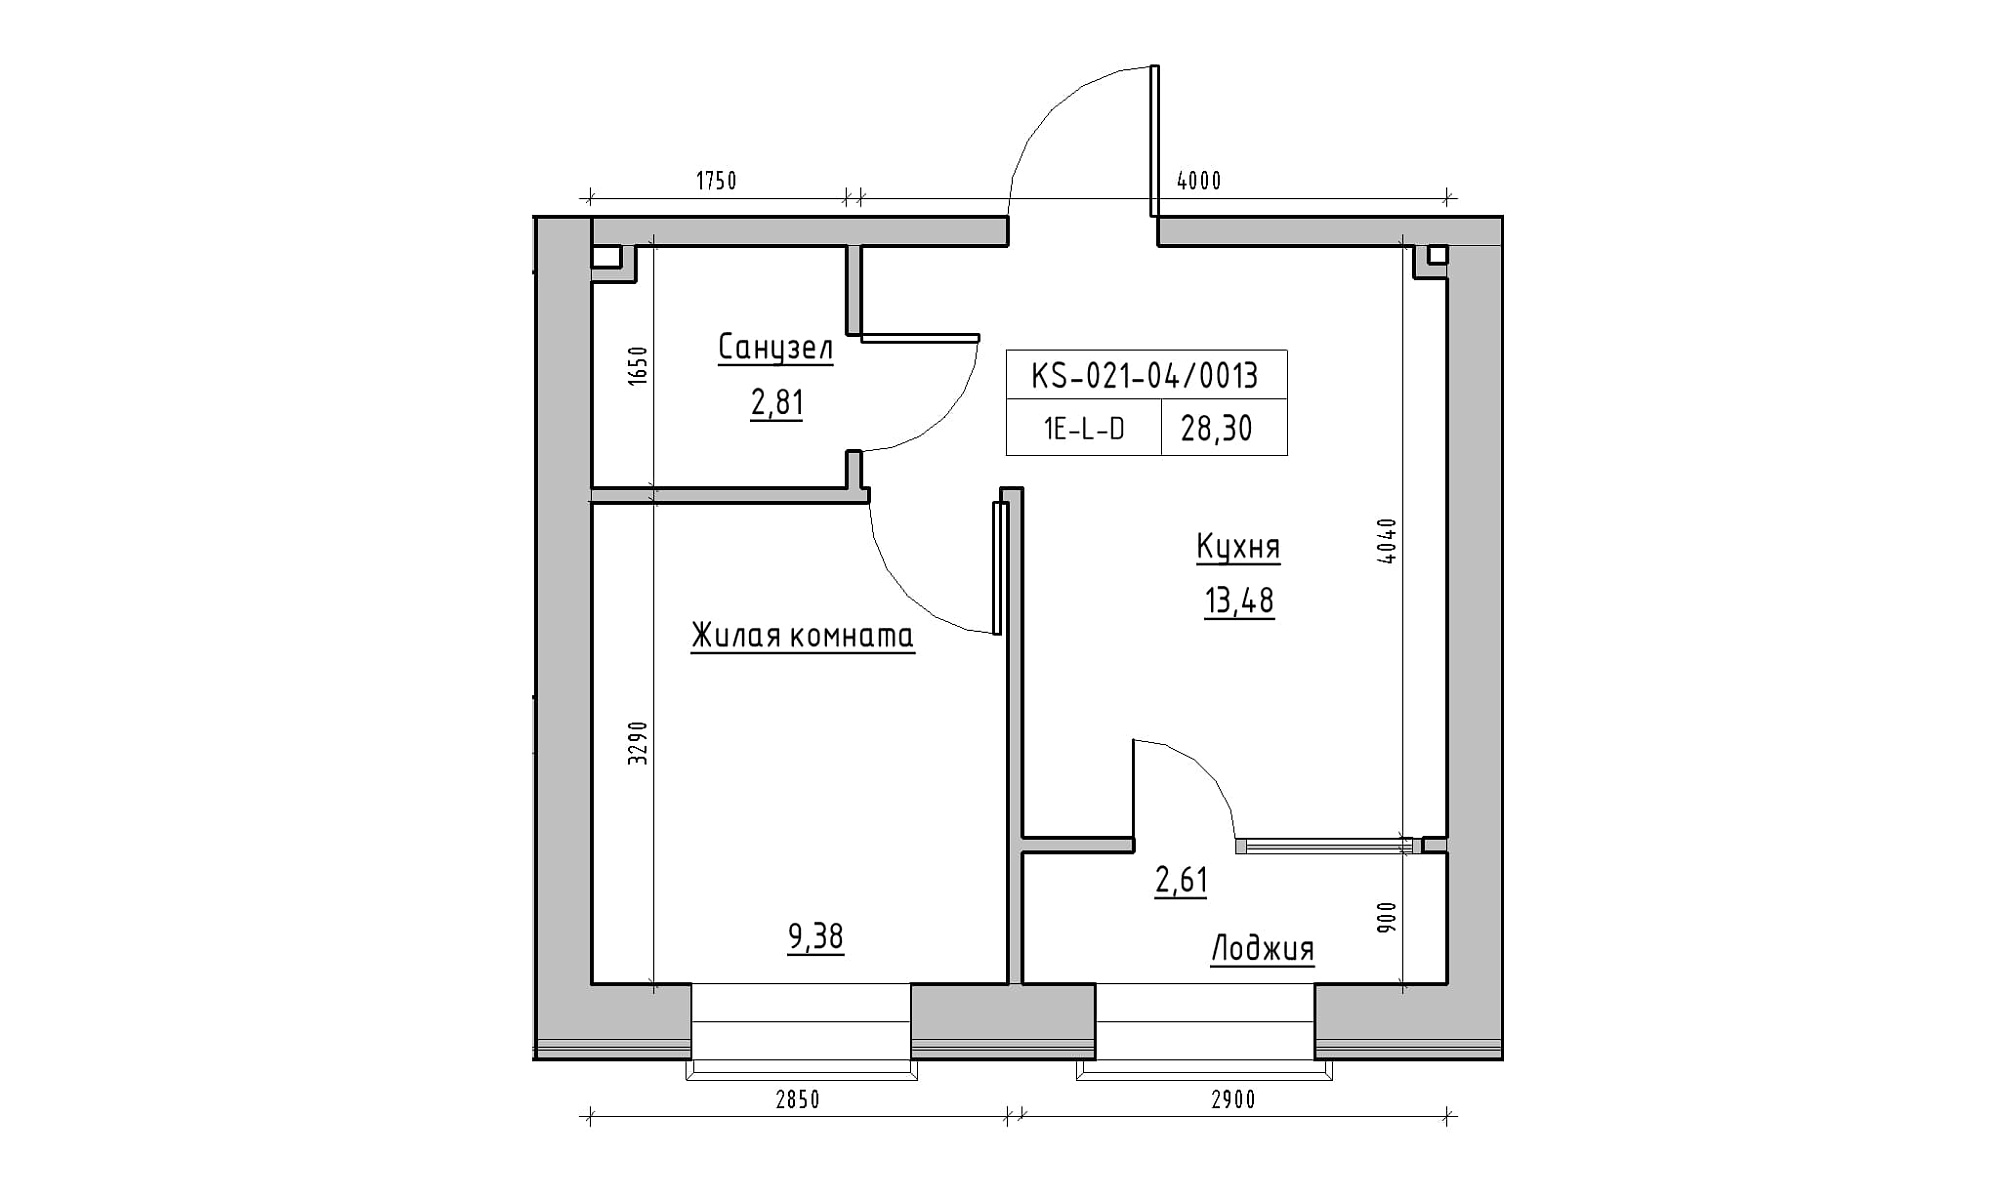 Планування 1-к квартира площею 28.3м2, KS-021-04/0013.